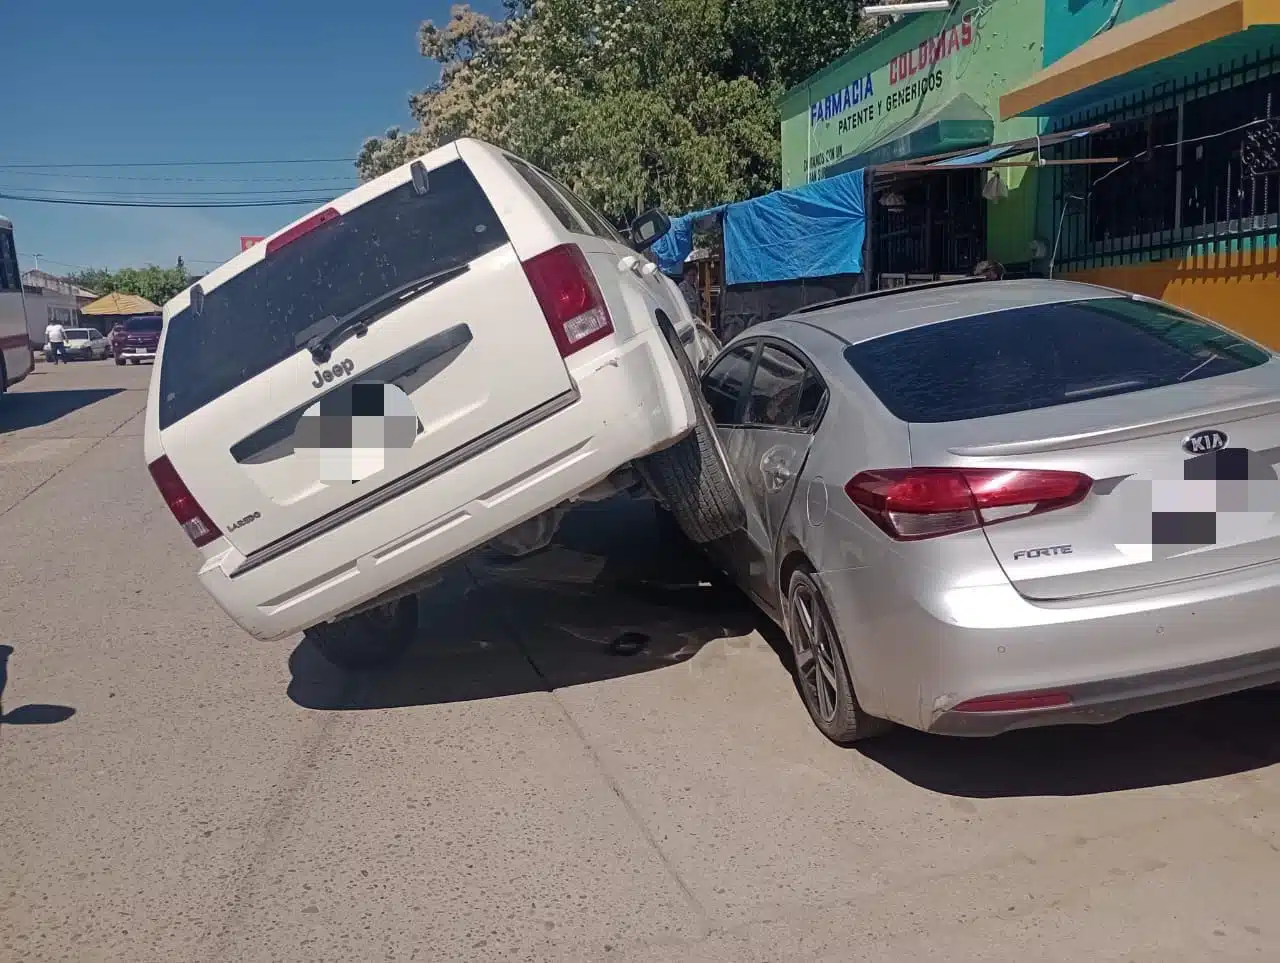 camioneta Jeep Cherokee blanca y vehículo Kia Forte gris, accidentados en el centro de la ciudad de Rosario.